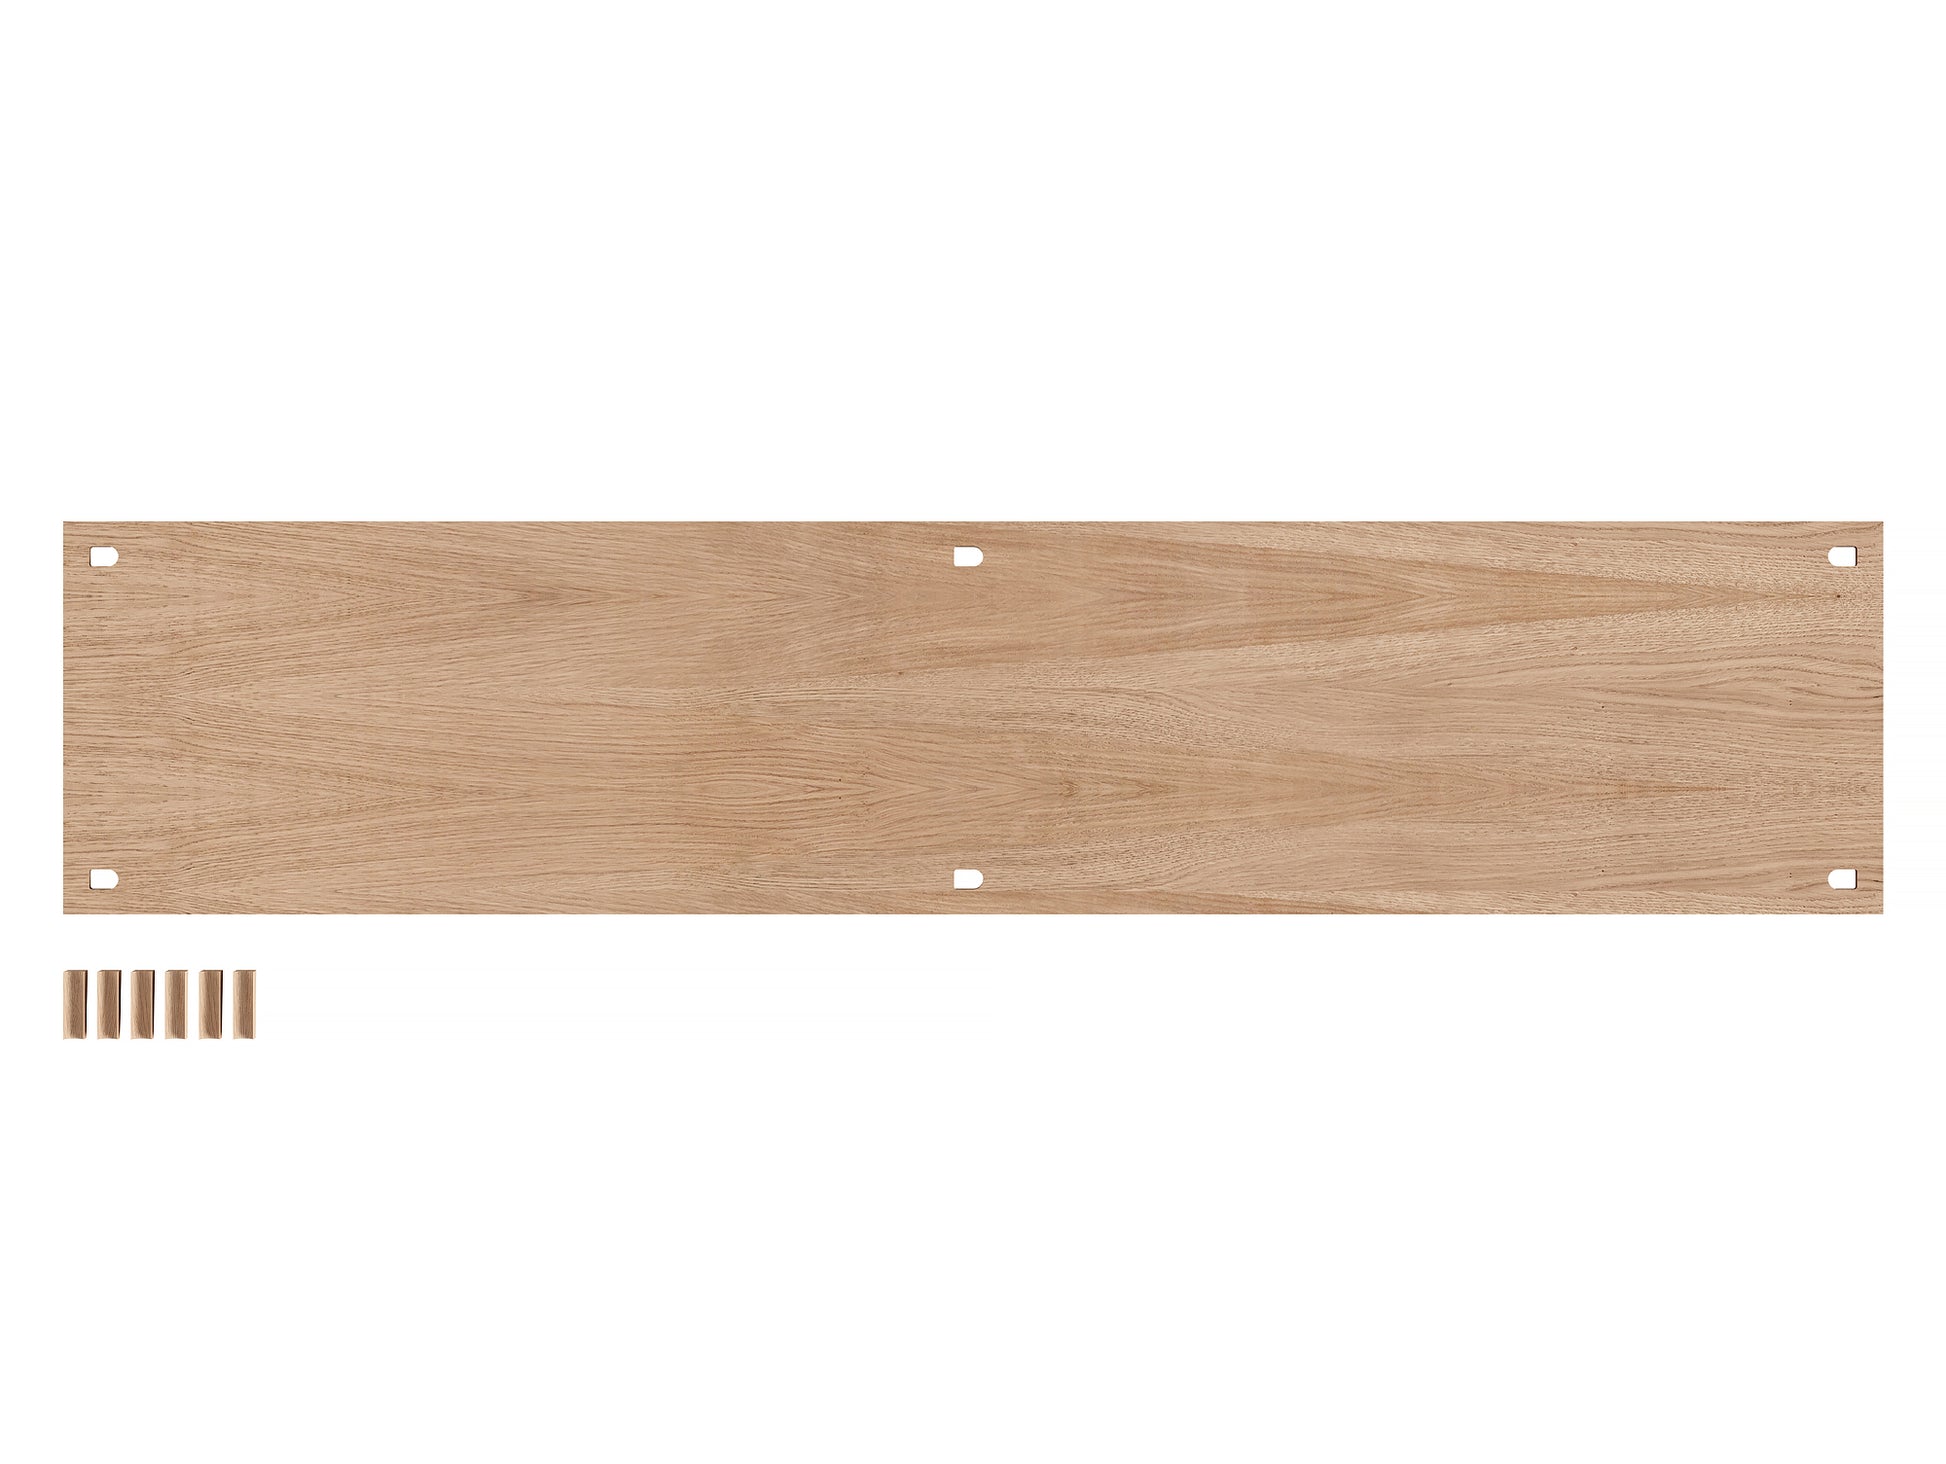 Moebe Shelf 162 x 35 cm - Double width shelf - in Oiled Oak